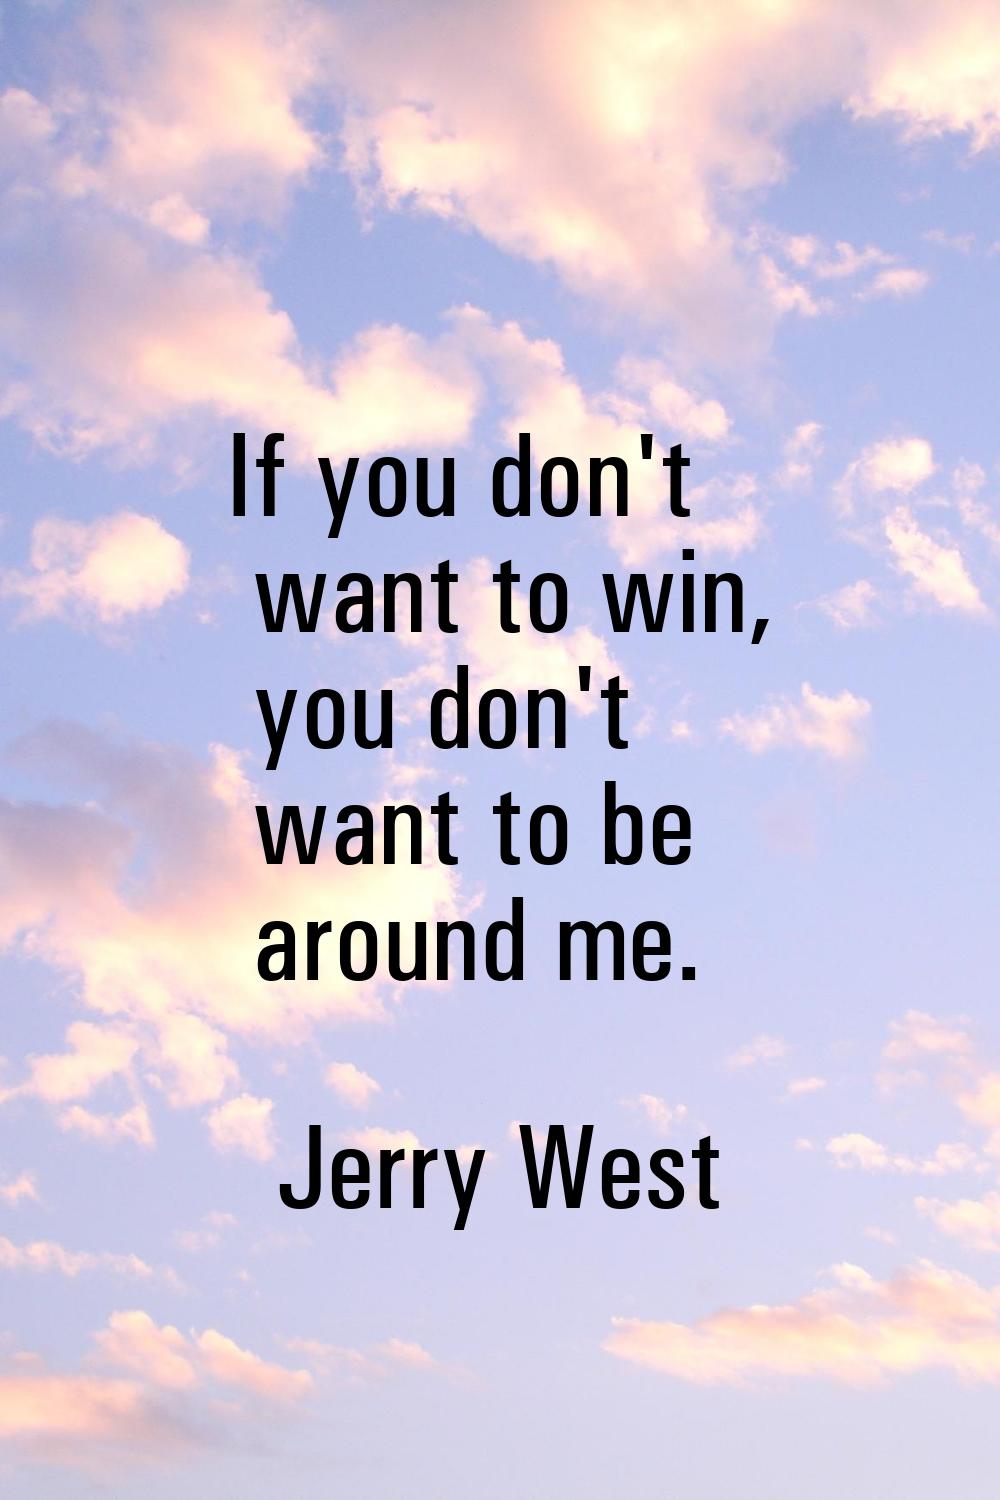 If you don't want to win, you don't want to be around me.